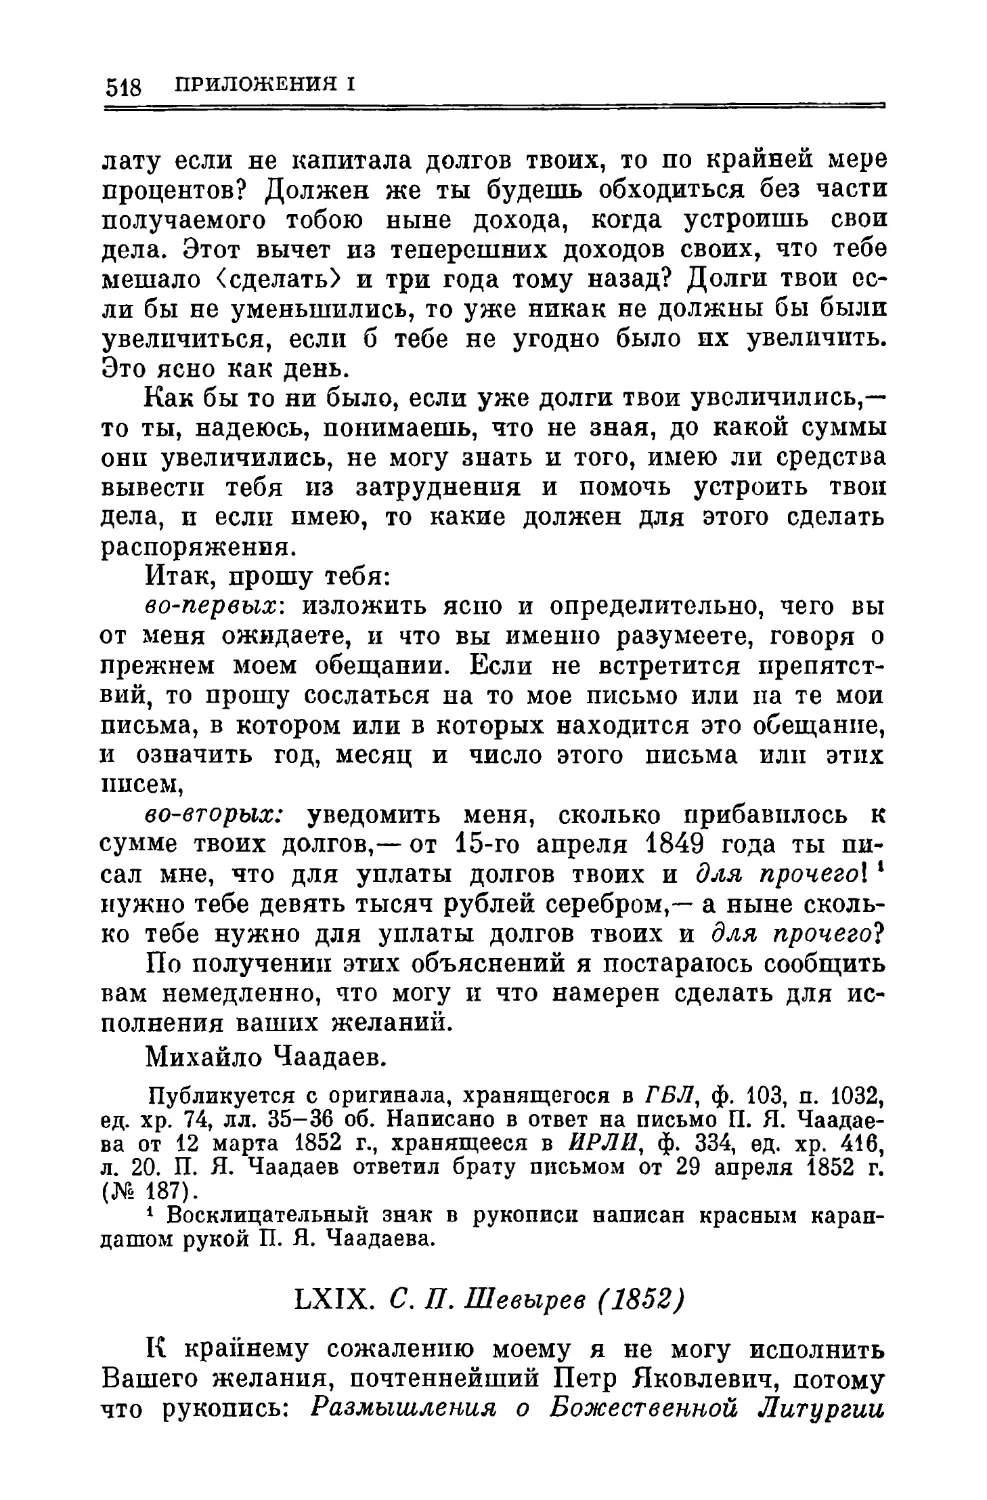 LXIX. Шевырев С.П. 2.V.1852